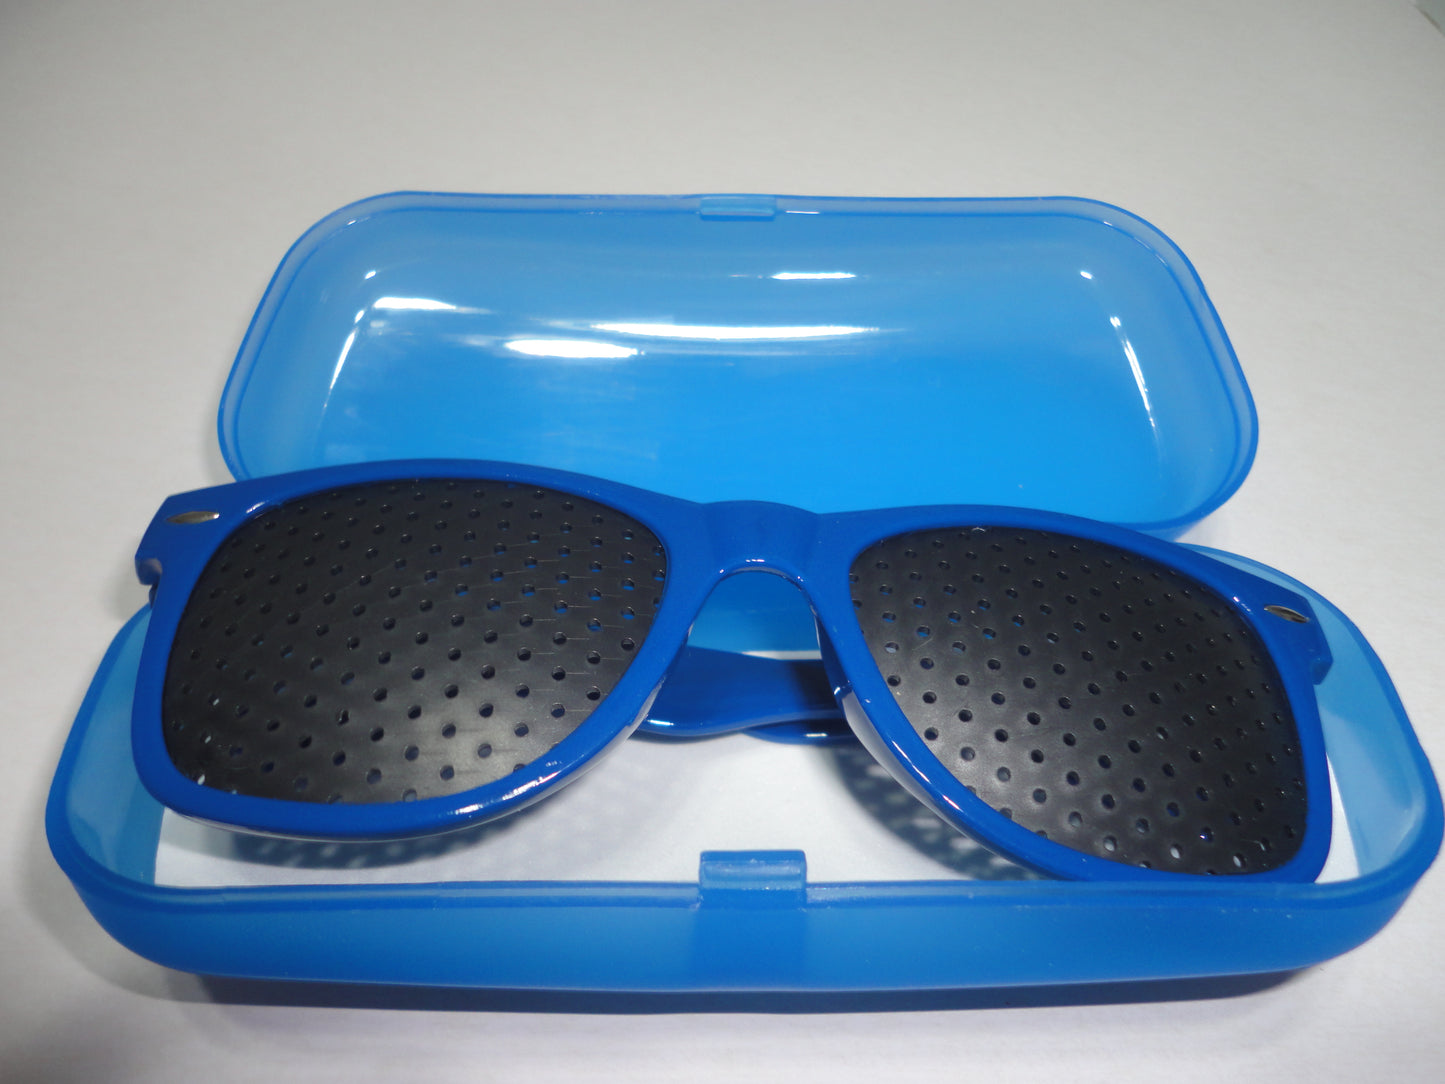 Blue Pinhole Glasses